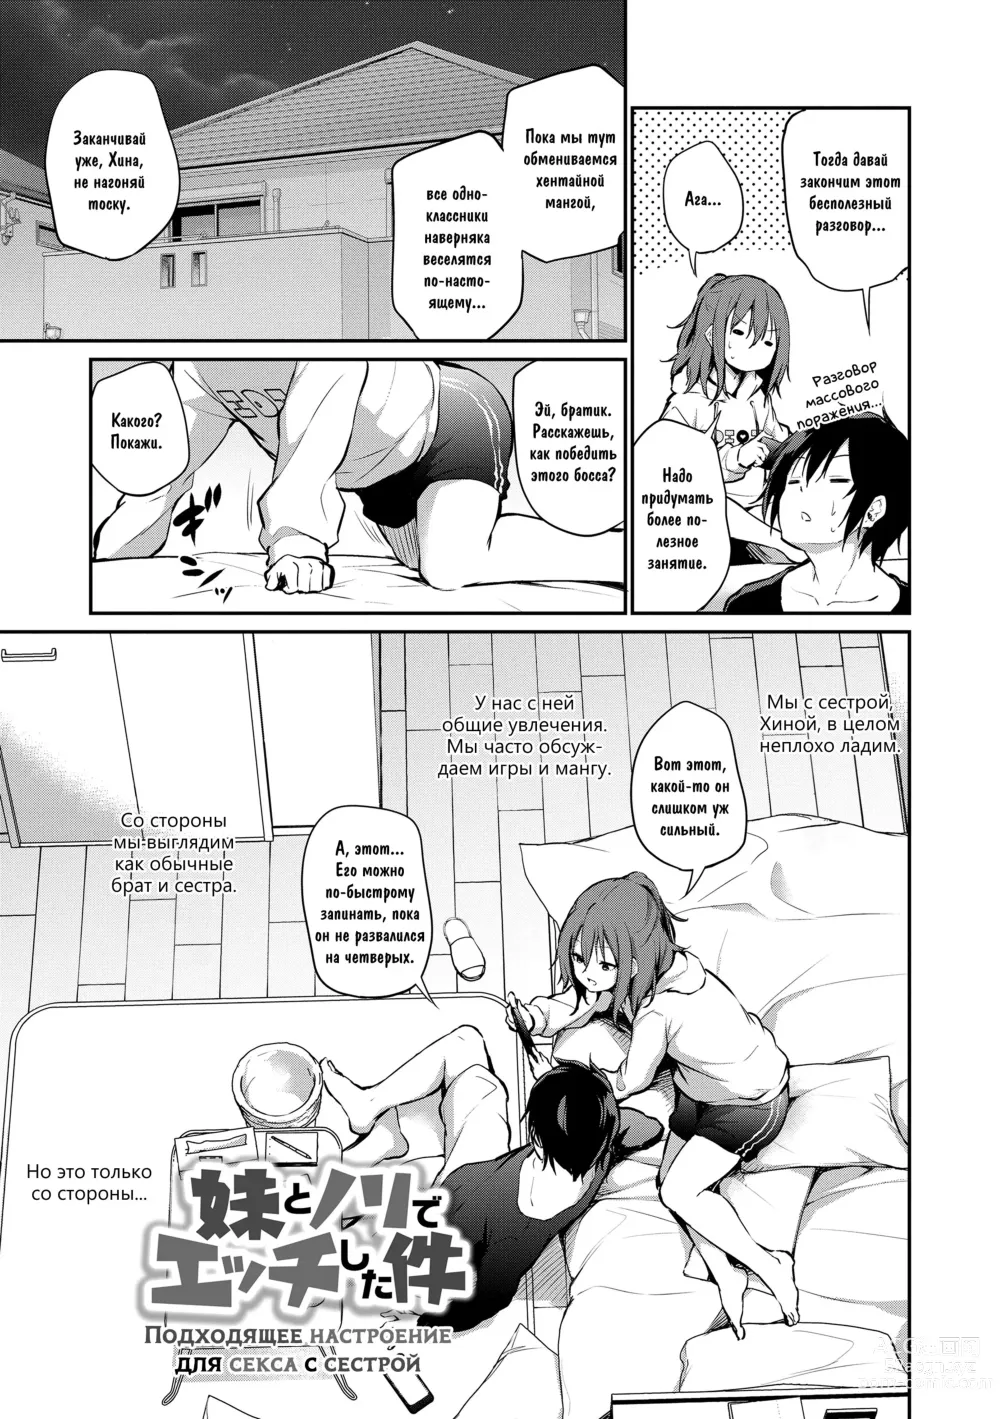 Page 3 of manga Подходящее настроение для секса с сестрой